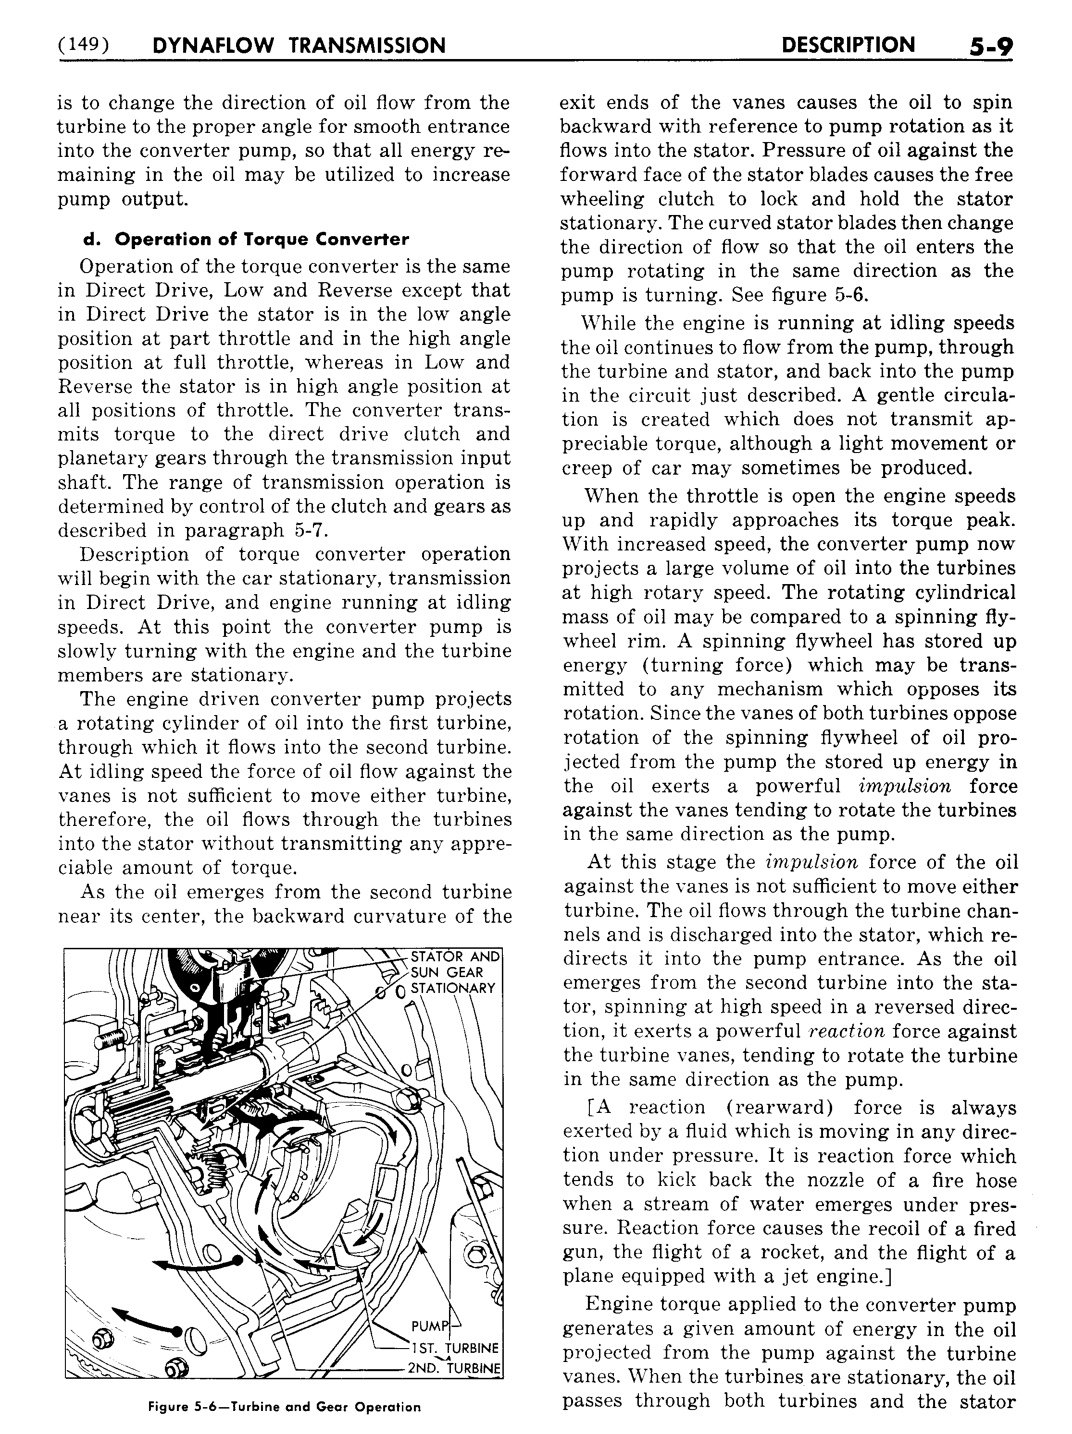 n_06 1955 Buick Shop Manual - Dynaflow-009-009.jpg